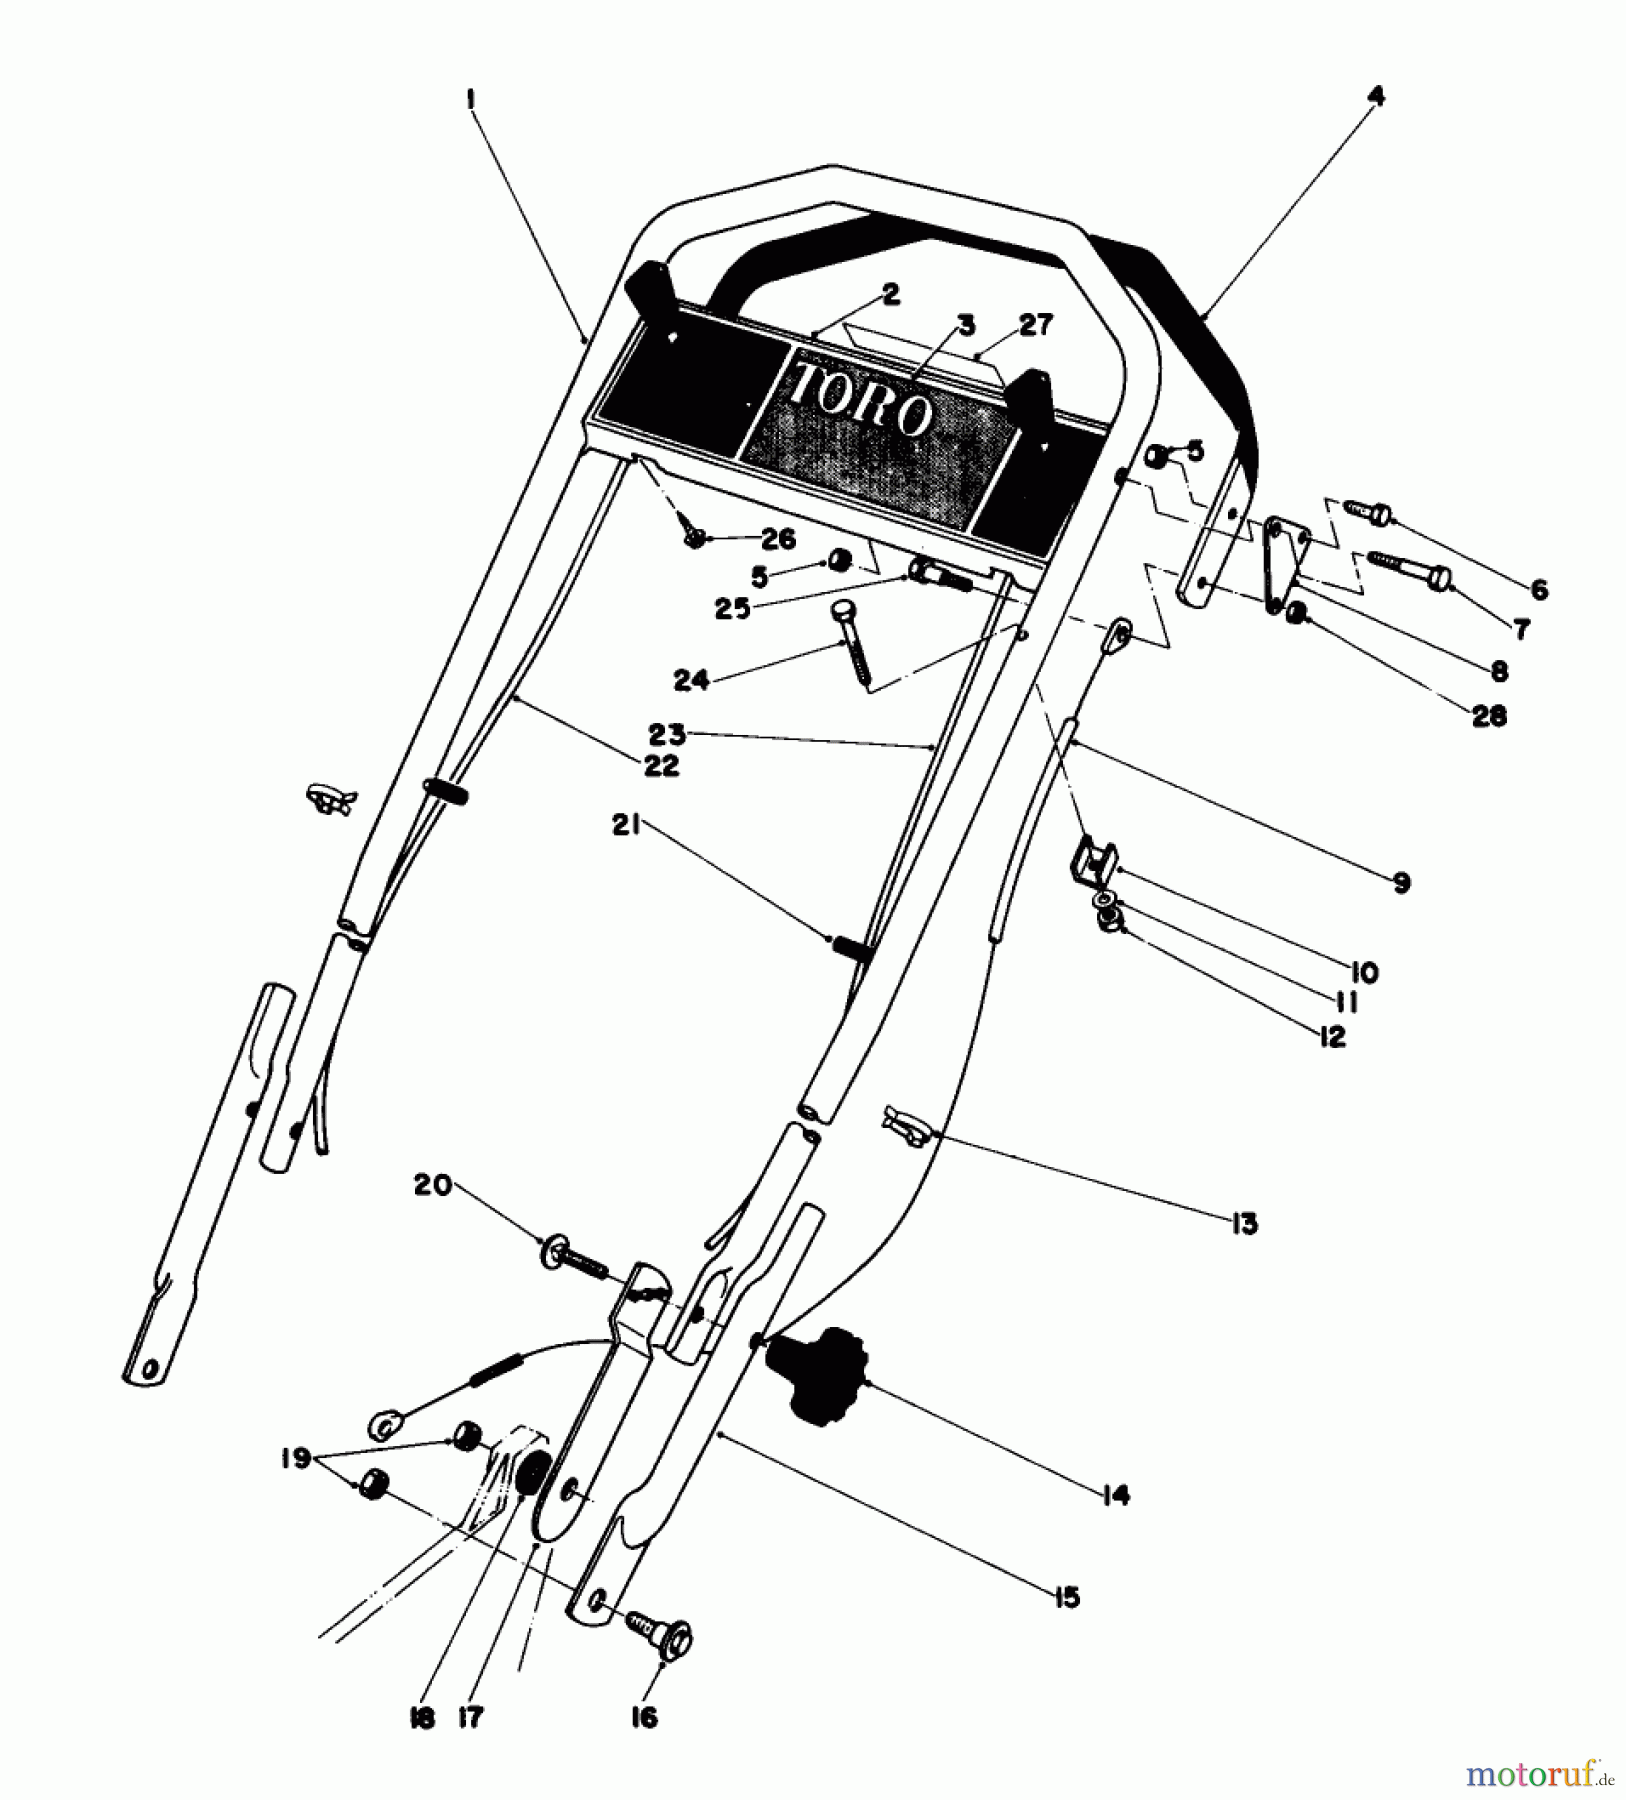  Toro Neu Mowers, Walk-Behind Seite 1 20775 - Toro Lawnmower, 1981 (1000001-1999999) HANDLE ASSEMBLY